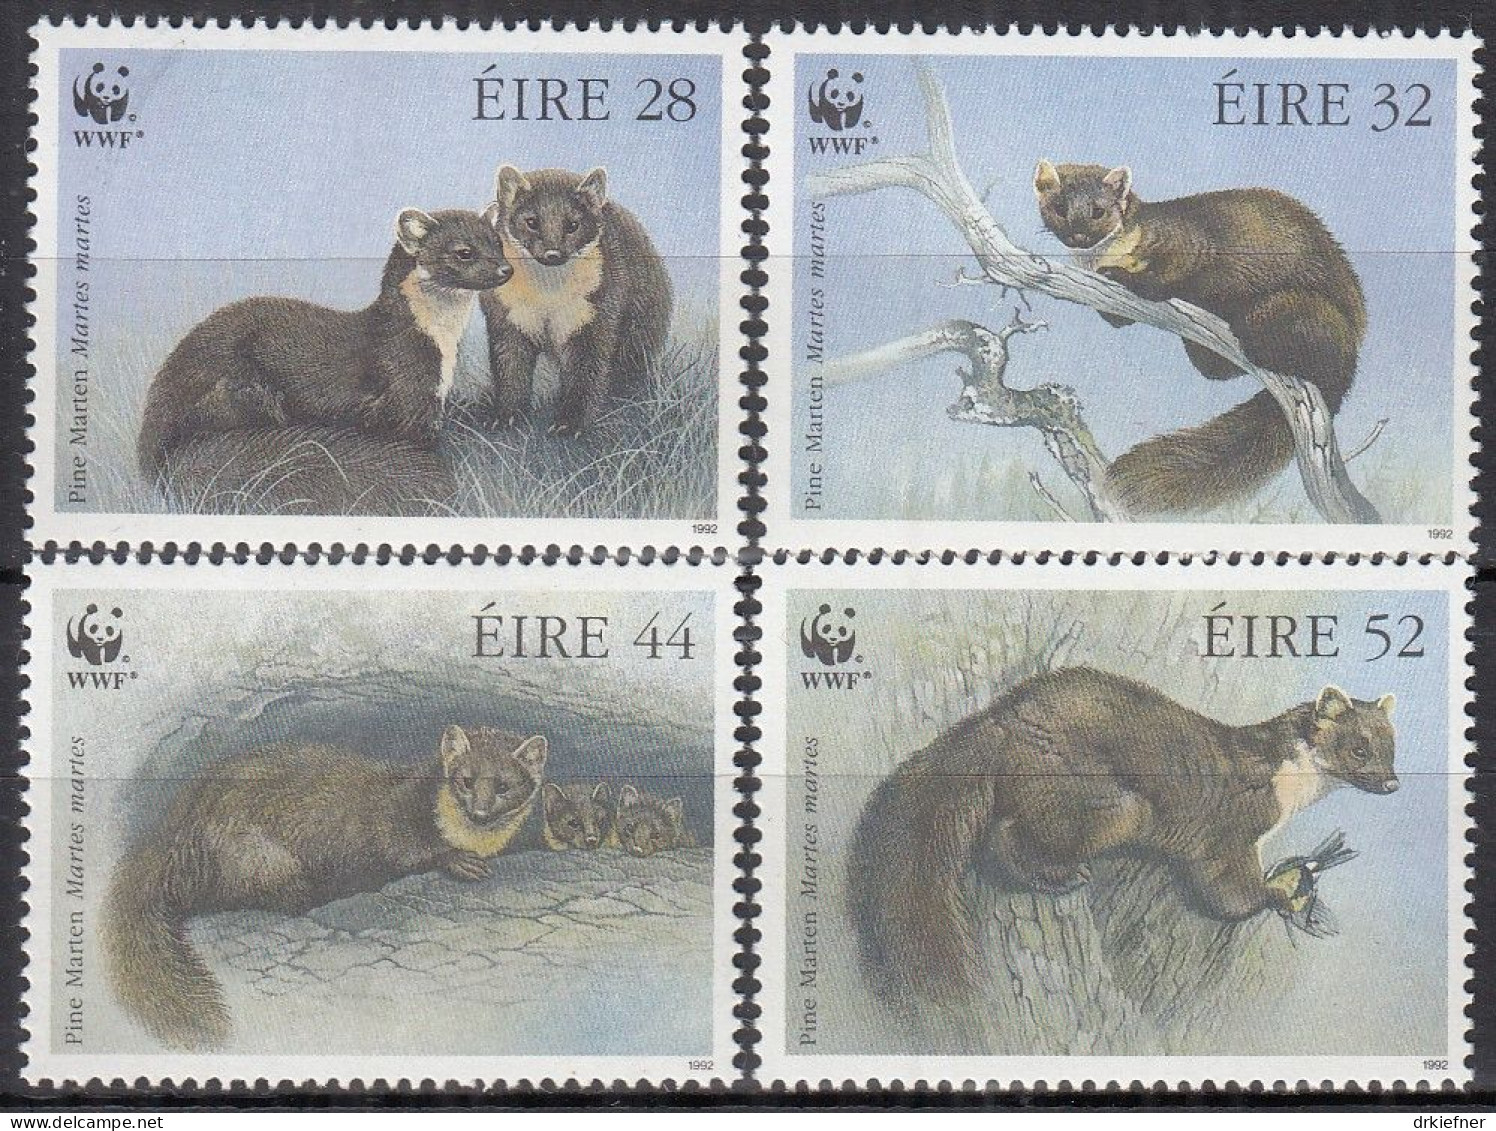 IRLAND  798-801, Postfrisch **, WWF, Weltweiter Naturschutz: Baummarder, 1992 - Ungebraucht